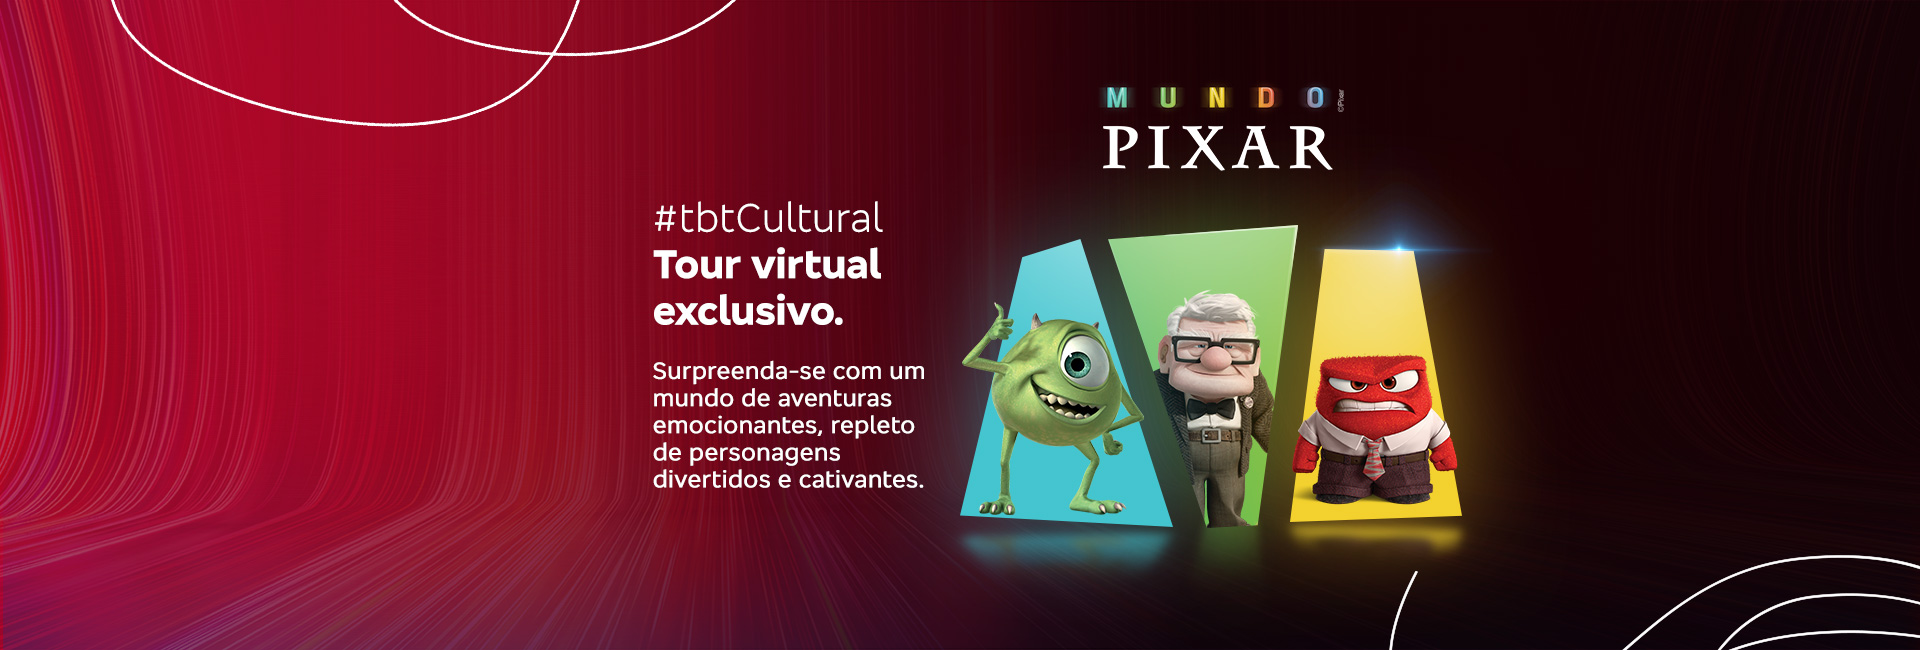 Tour virtual mundo Pixar